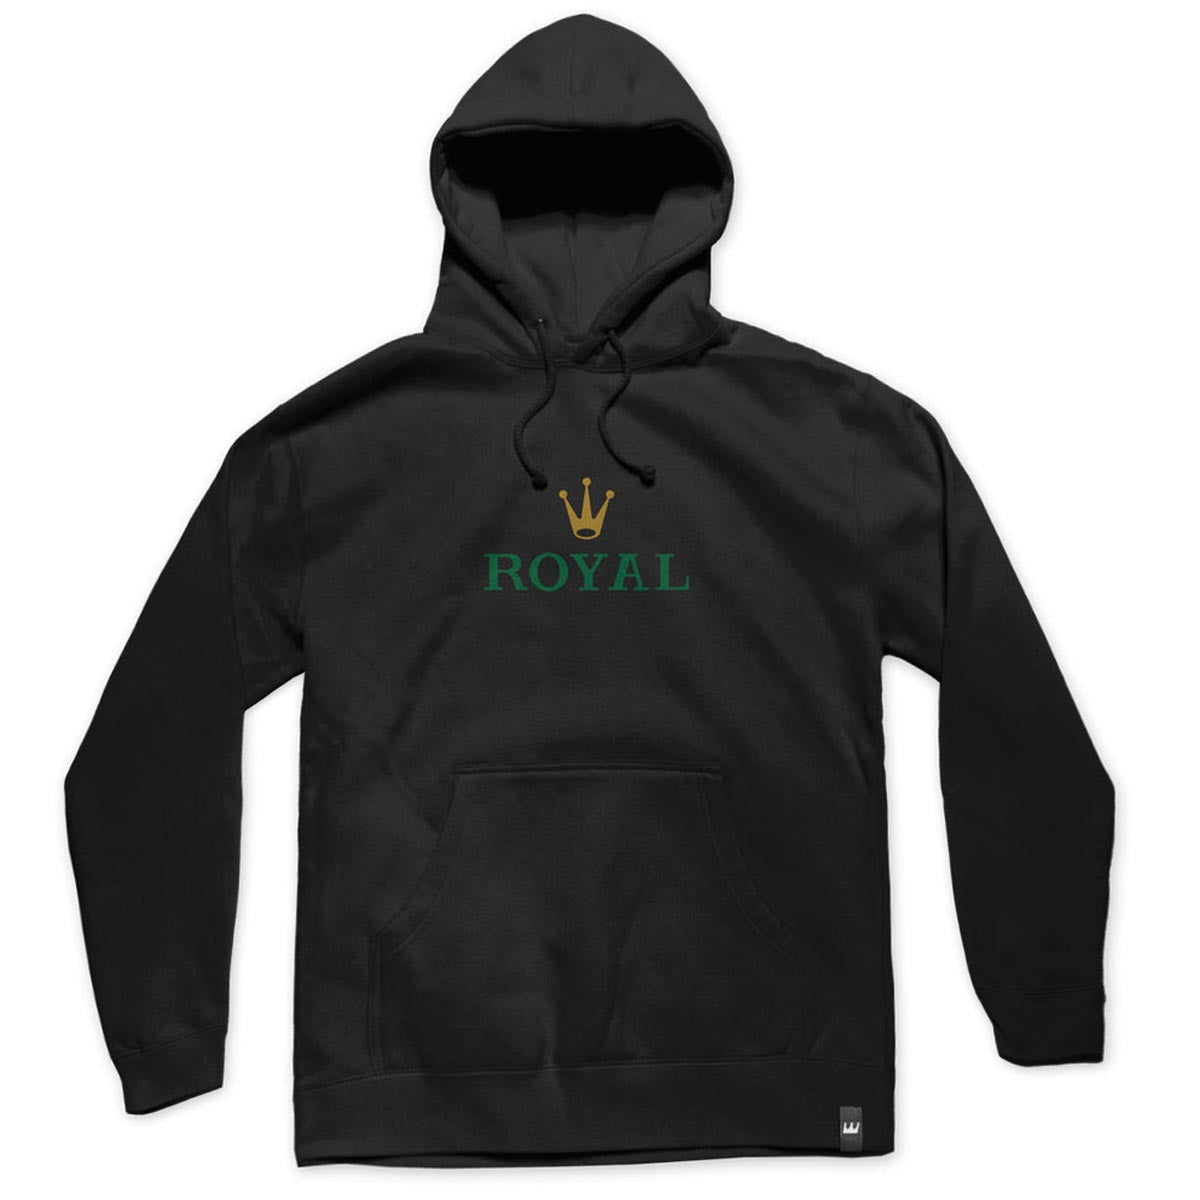 Royal Rollie Hoodie - Black/Multi image 1